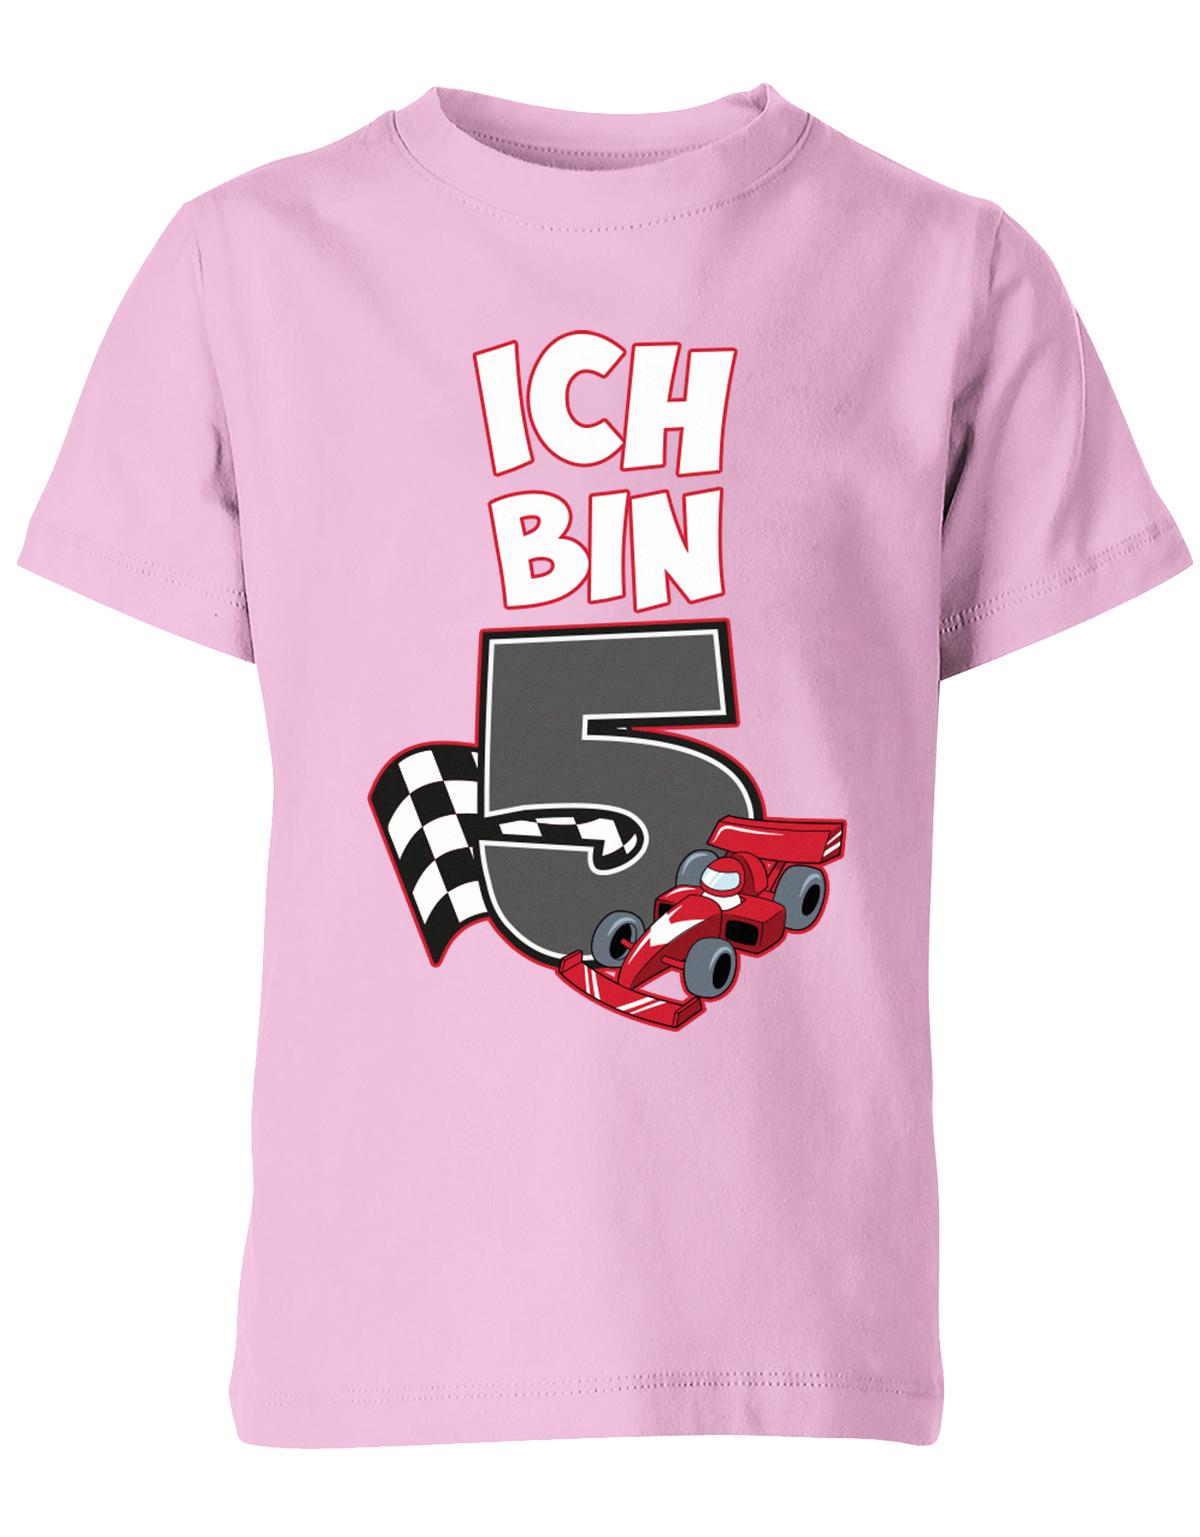 ich-bin-5-autorennen-rennwagen-geburtstag-rennfahrer-kinder-shirt-rosa